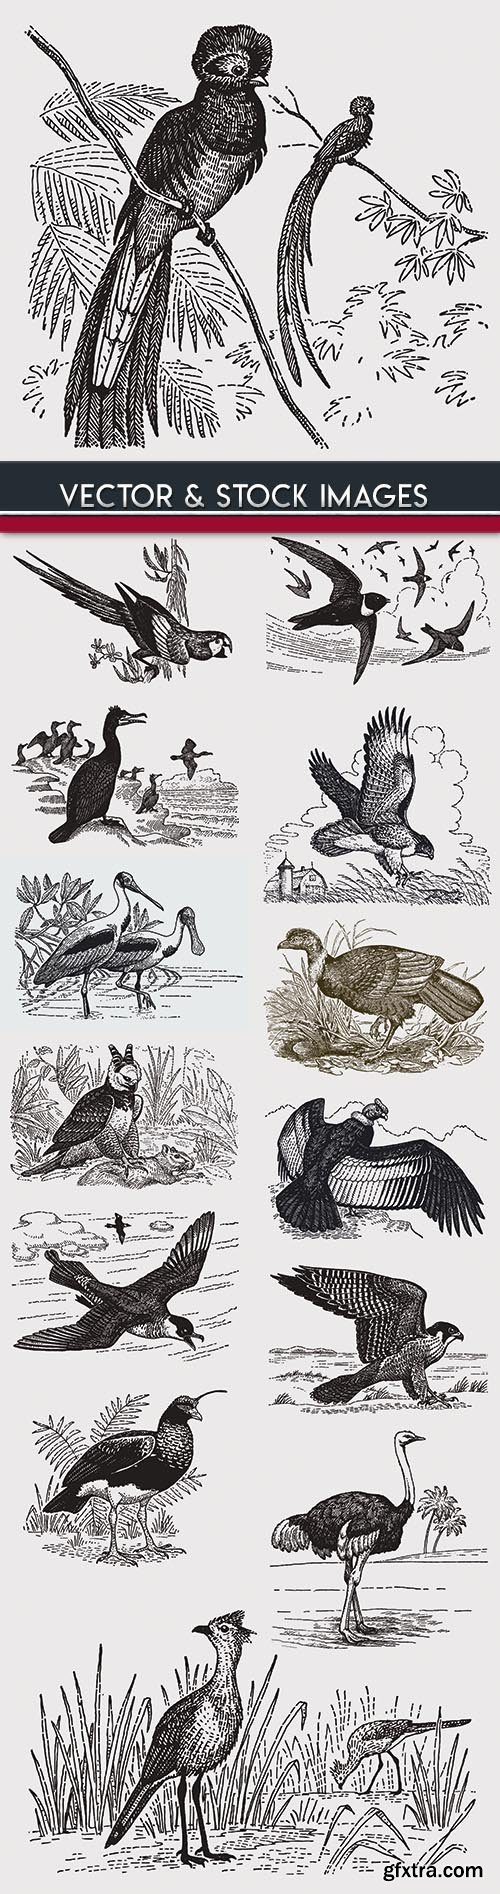 Birds drawn engravings in vintage style